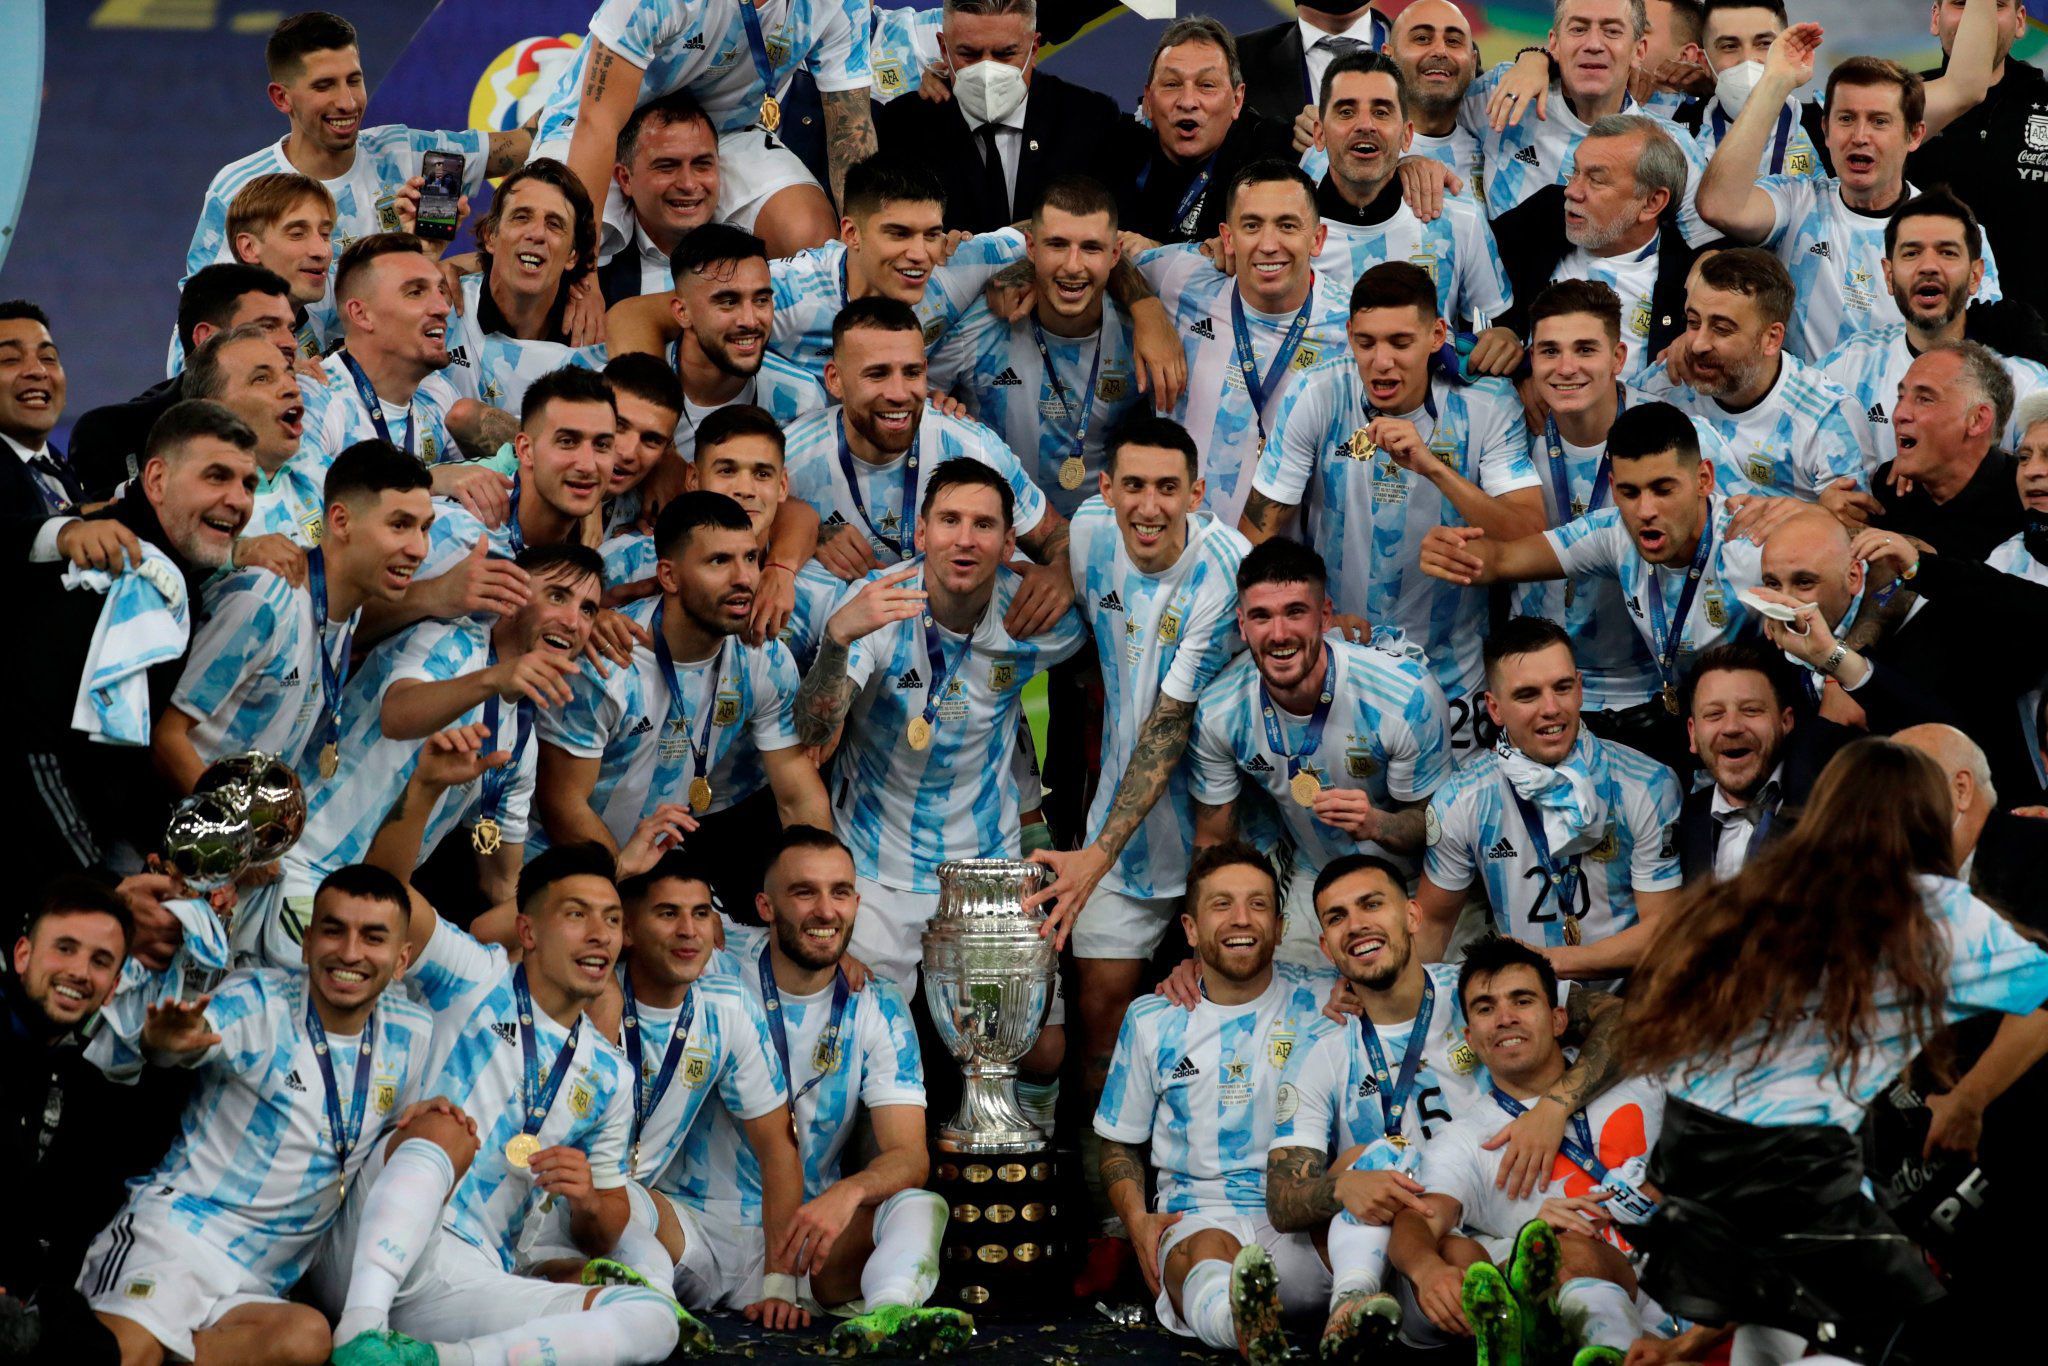 La lista de convocados de la Selección Argentina para la Copa América de Fútbol  Playa - El Economista